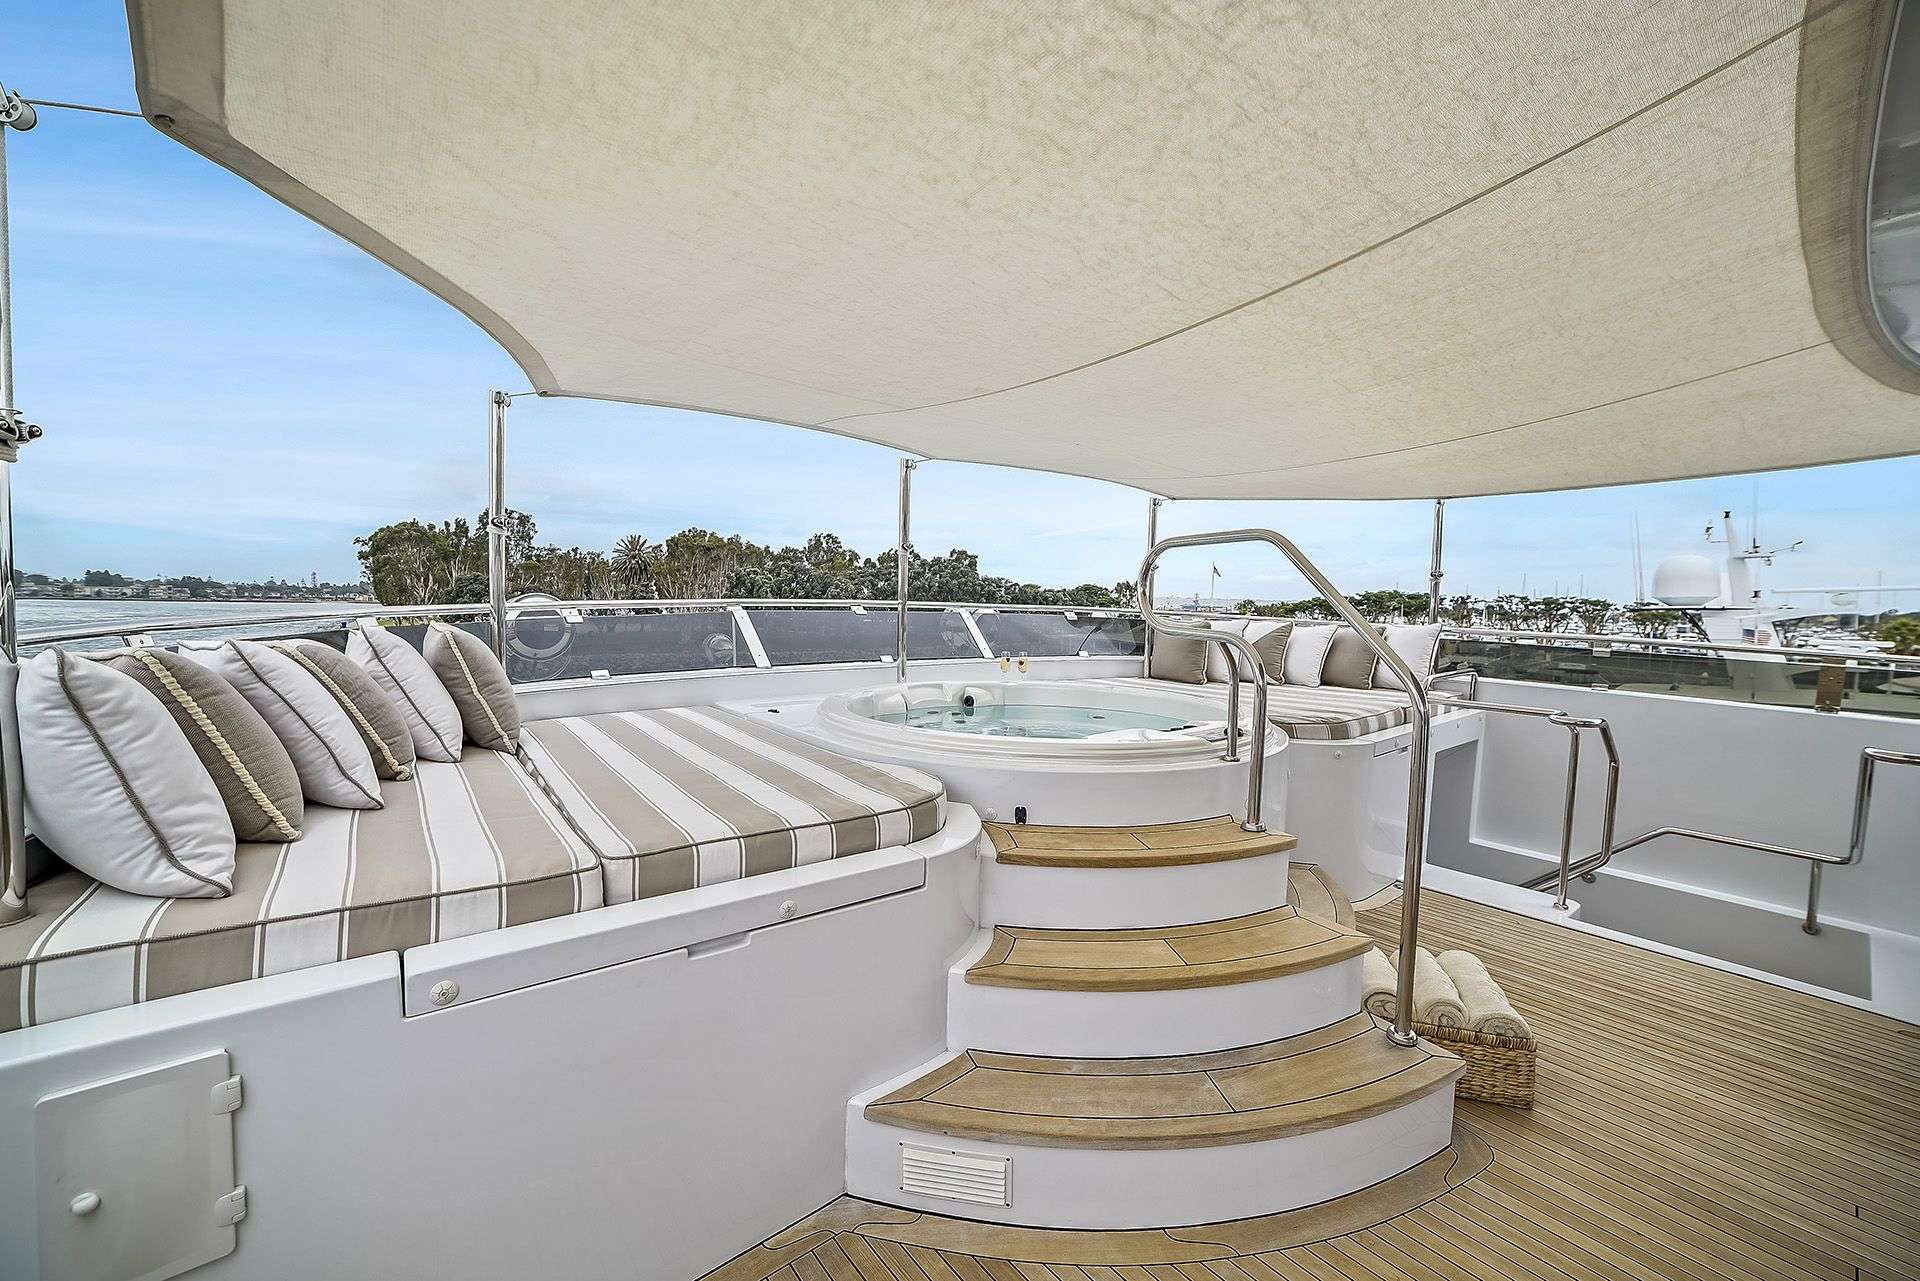 ARTEMIS Yacht Charter - Sun Deck